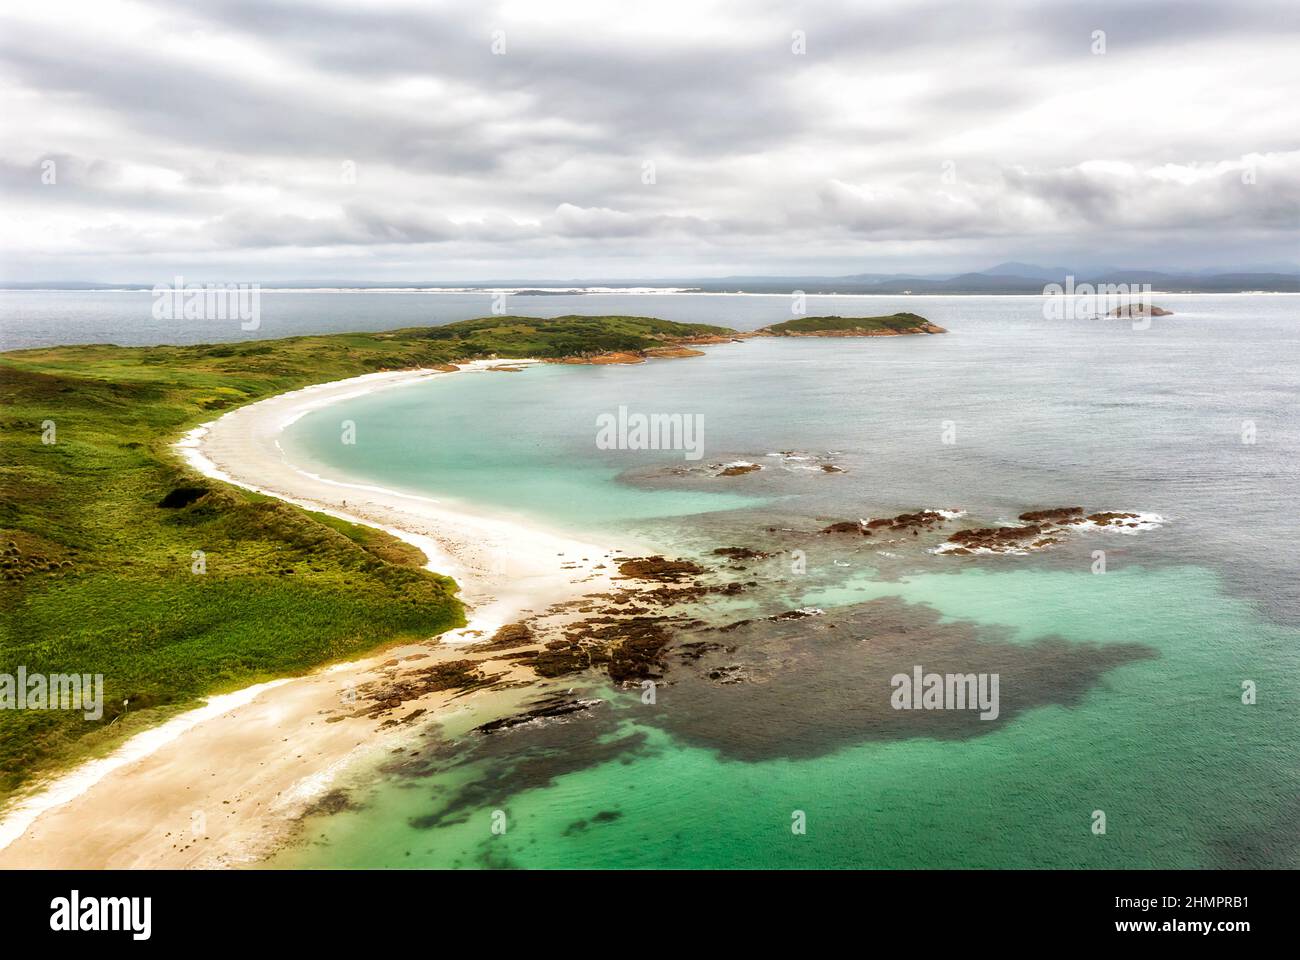 Panoramica remota Broughton isola sulla costa pacifica dell'Australia - mare aereo verso continente. Foto Stock